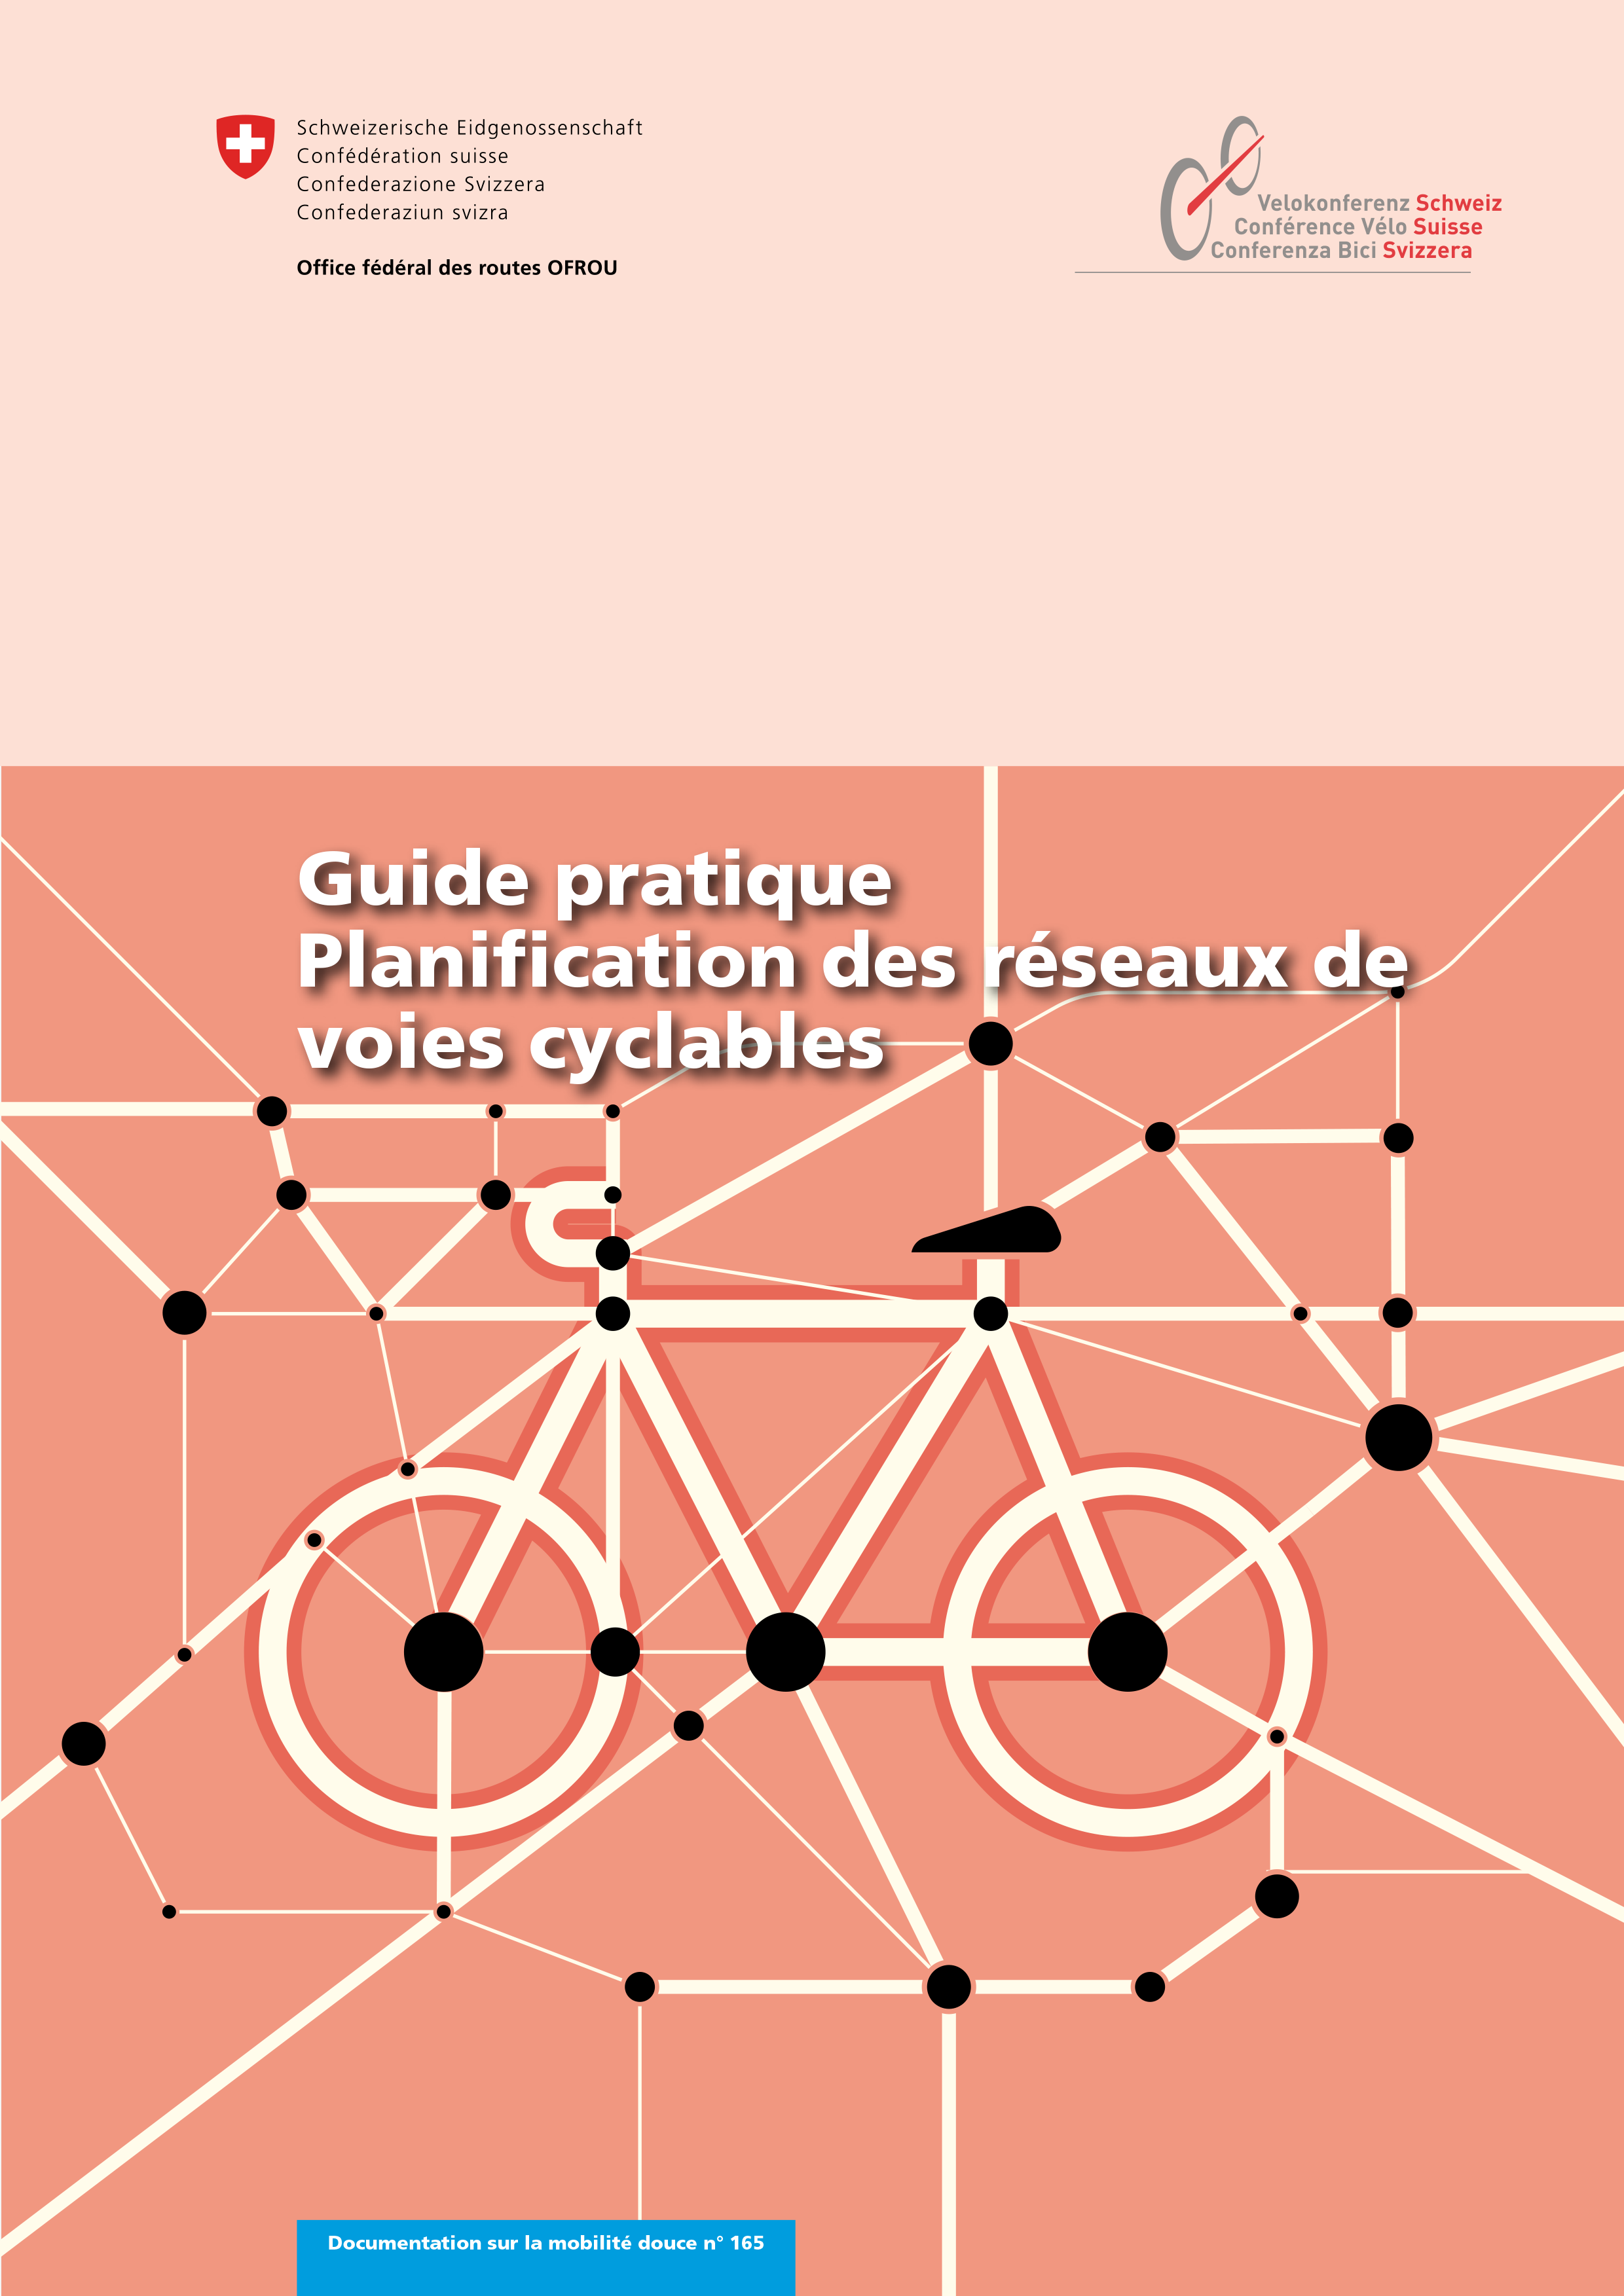 teaser_guide_pratique_planification_réseaux_voies_cyclables